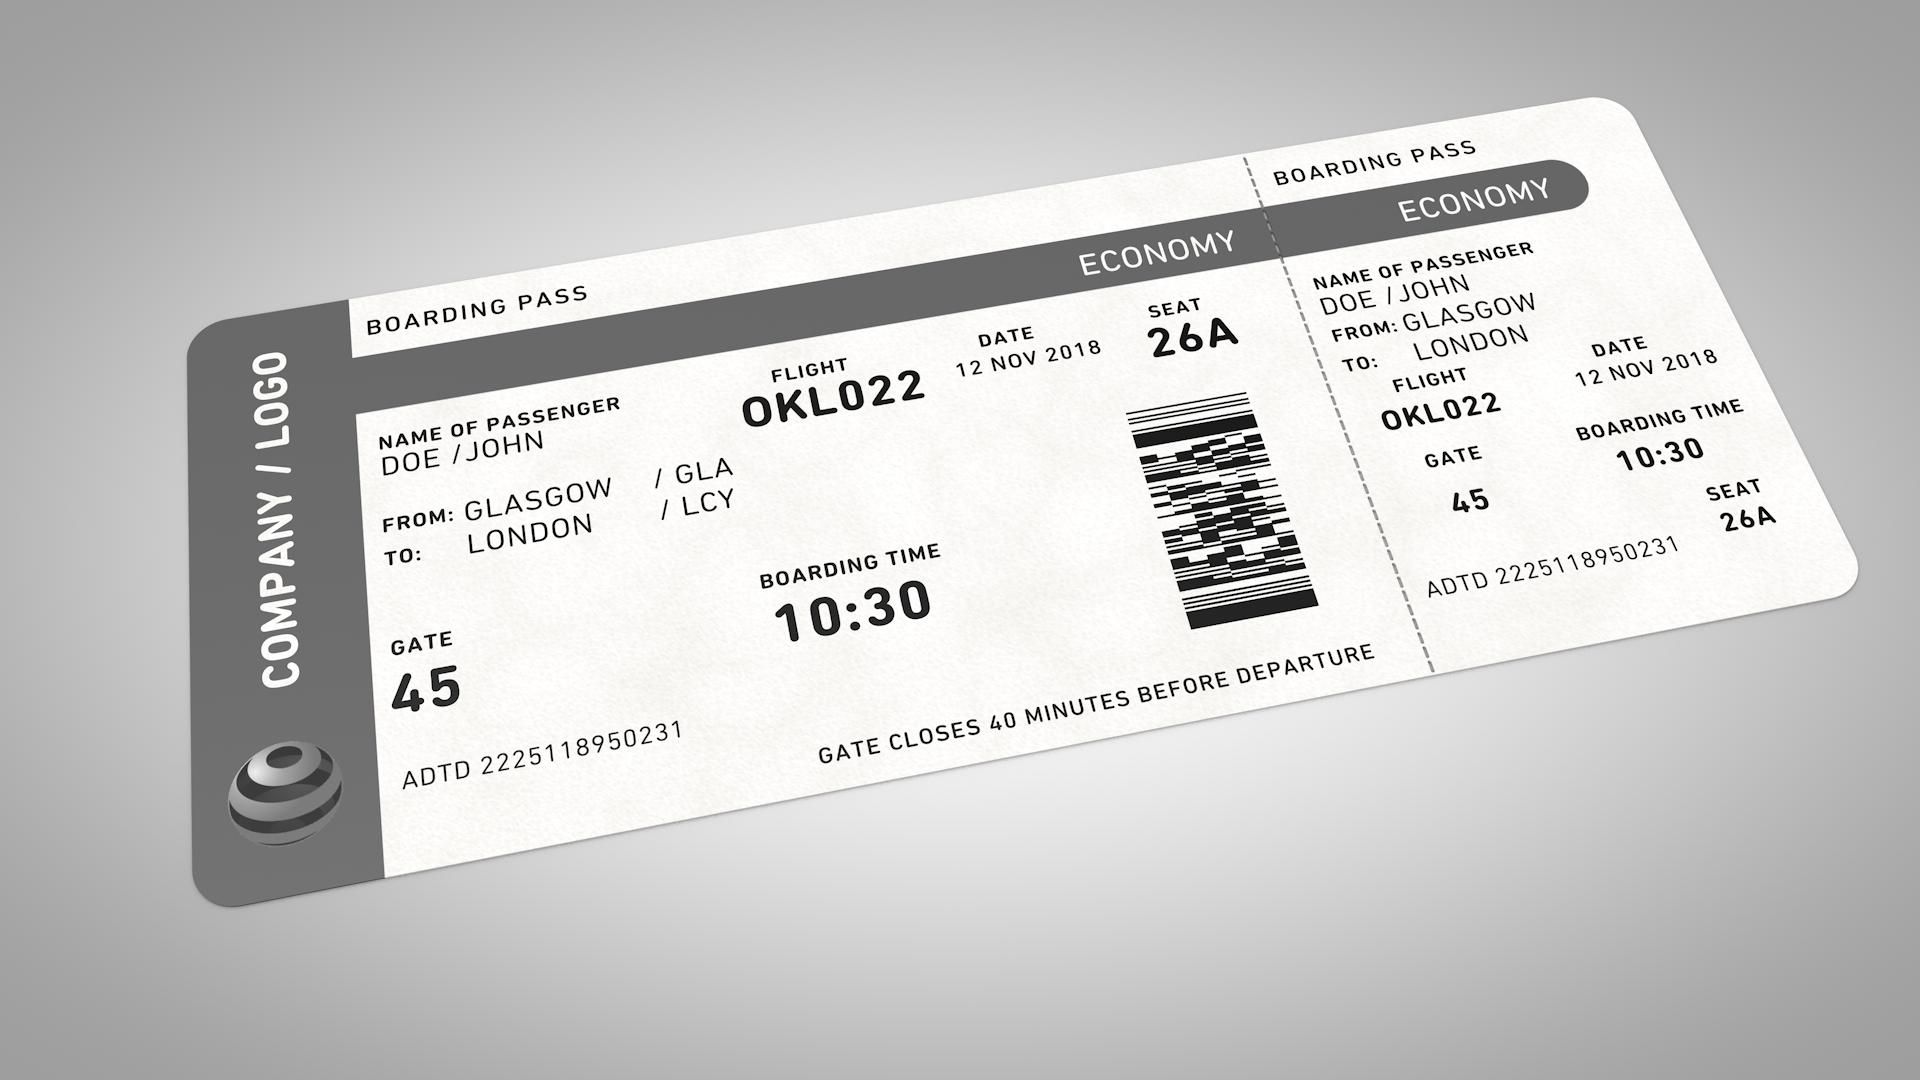 vé máy bay có các ký tự như B, H, M hoặc Y, hành khách được phân ngồi khoang hạng phổ thông